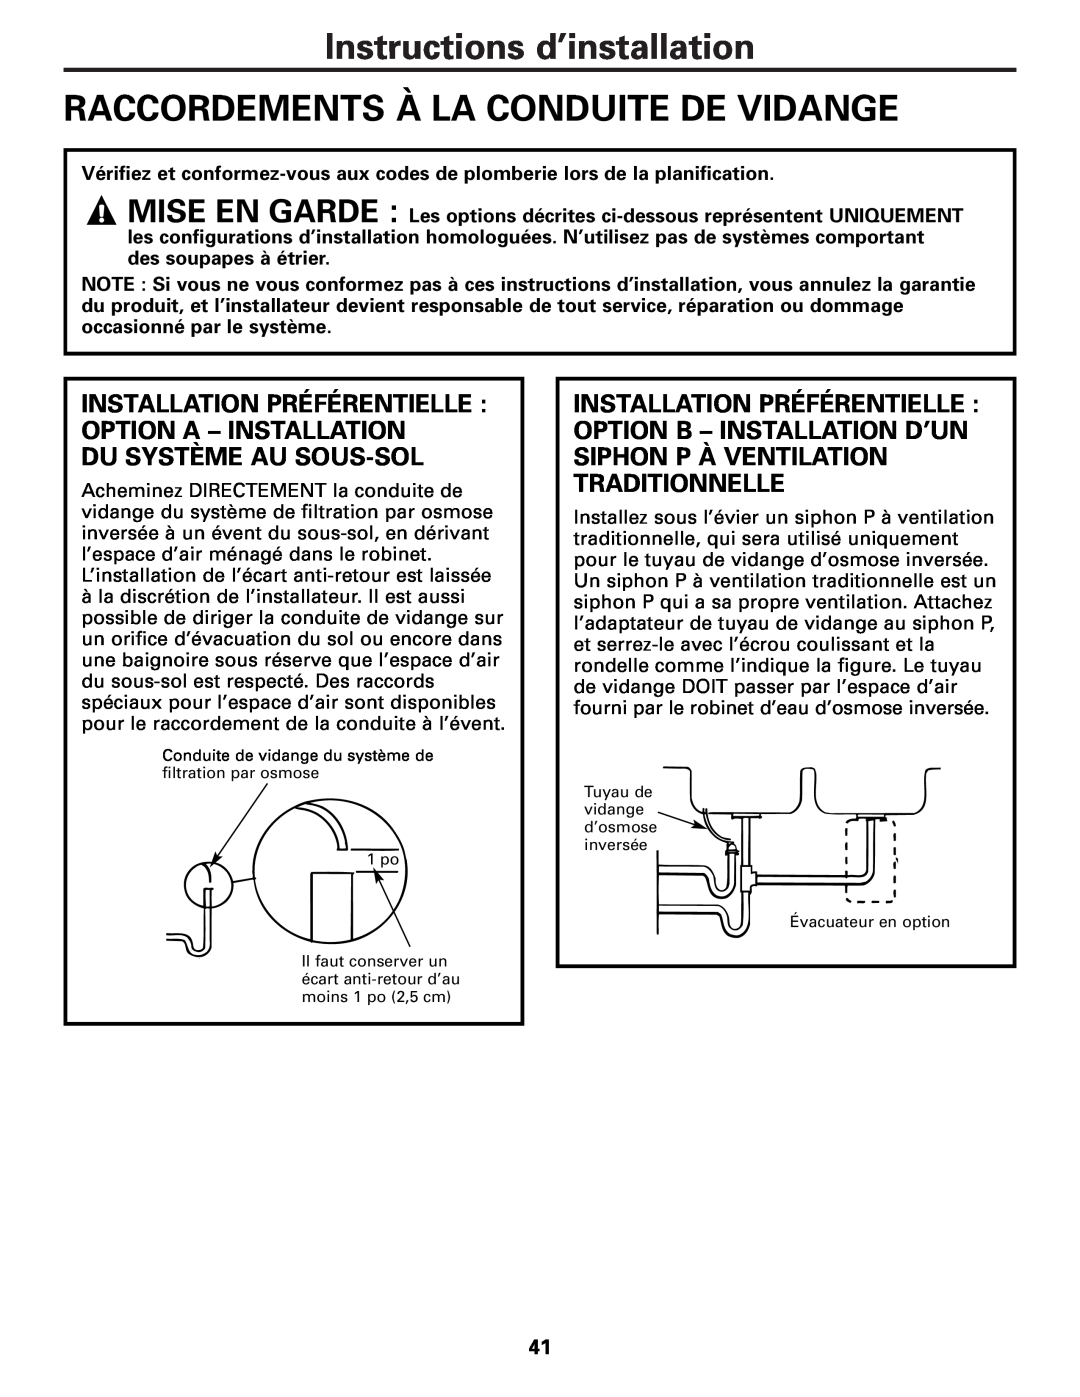 GE PXRQ15F owner manual Instructions d’installation RACCORDEMENTS À LA CONDUITE DE VIDANGE, Du Système Au Sous-Sol 